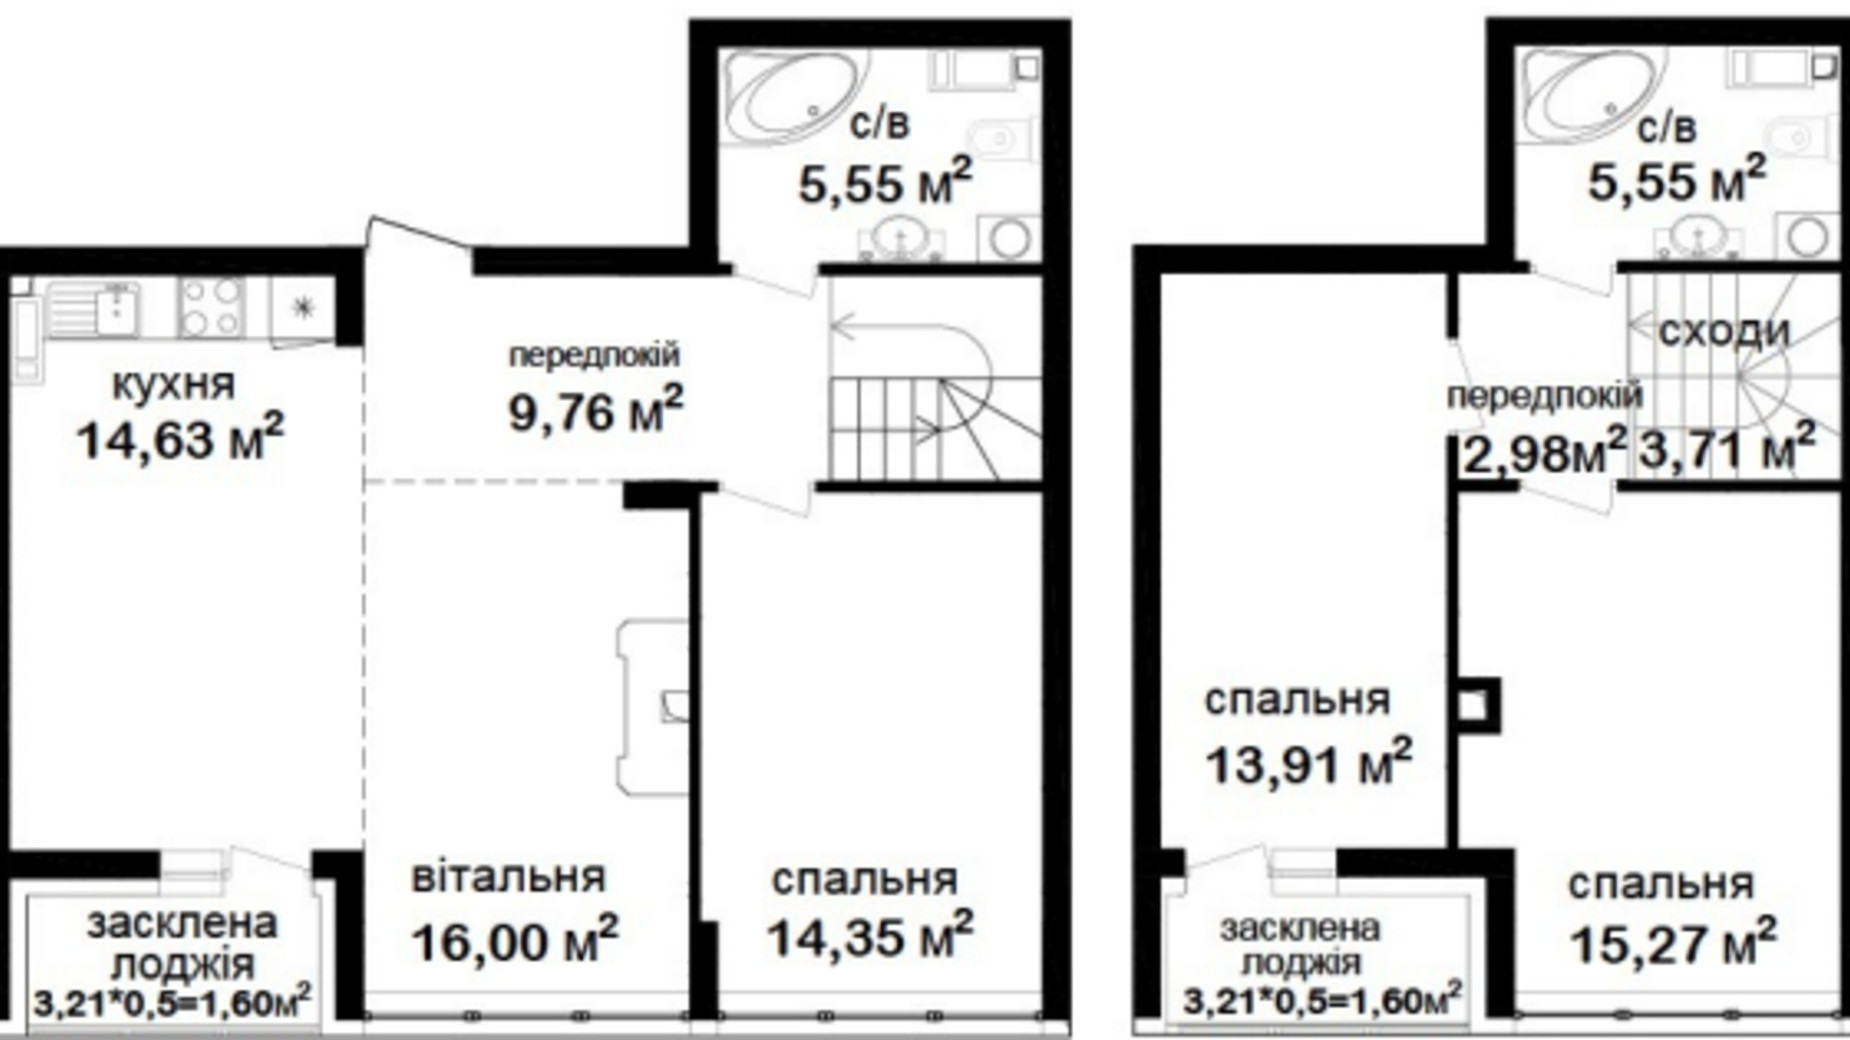 Планировка много­уровневой квартиры в ЖК Феофания City 104.91 м², фото 554295